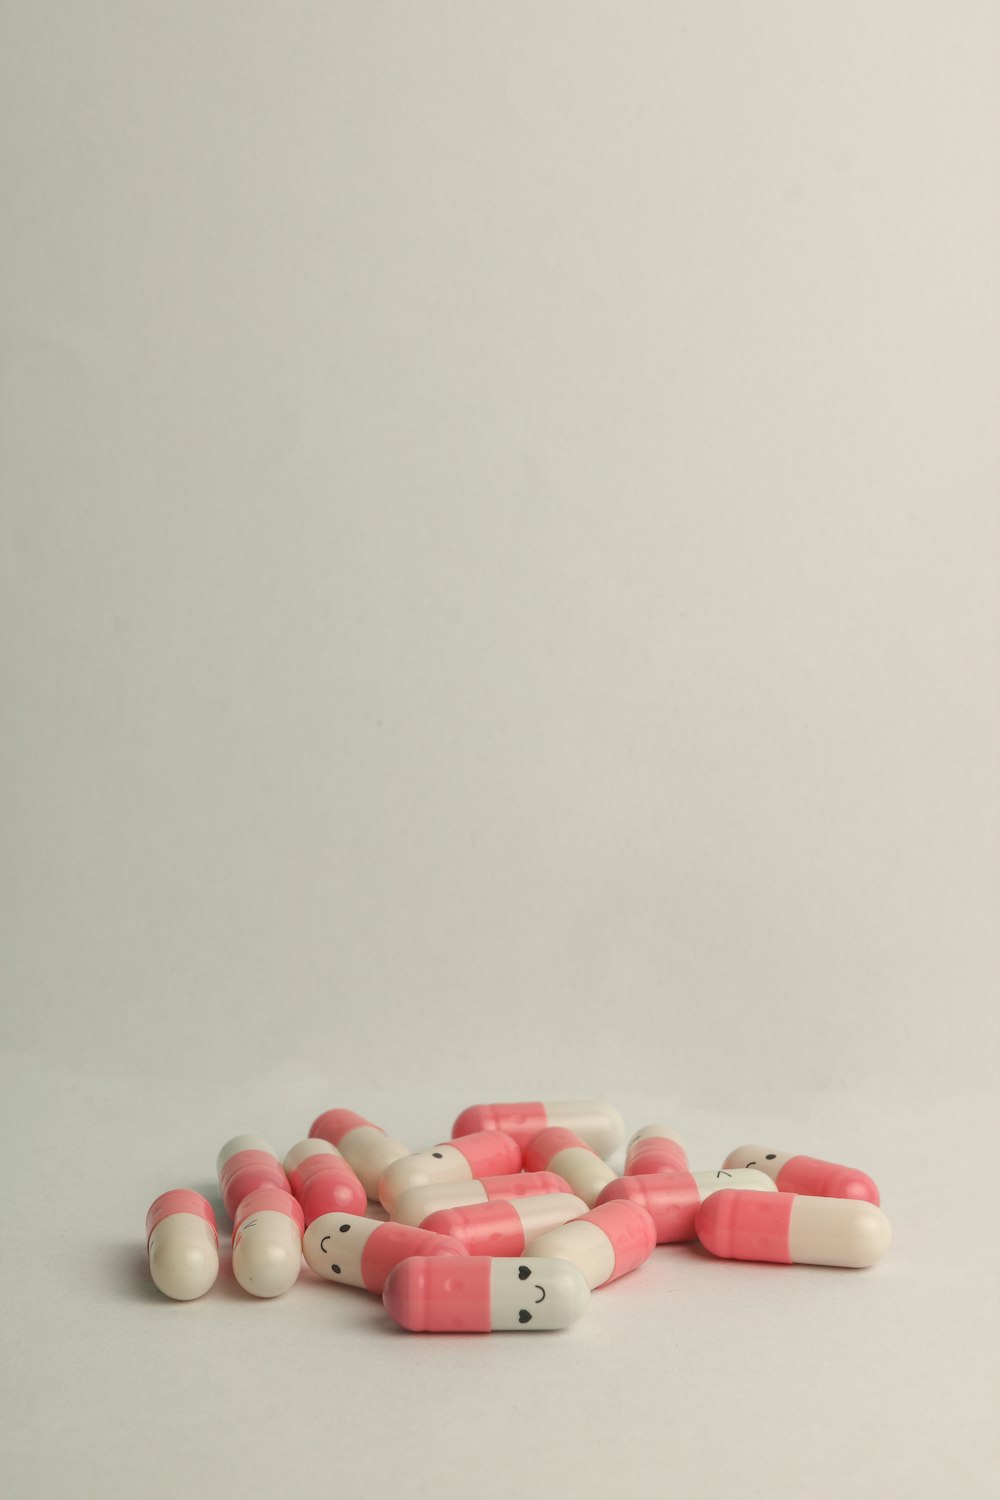 Píldora de medicación rosa y blanca